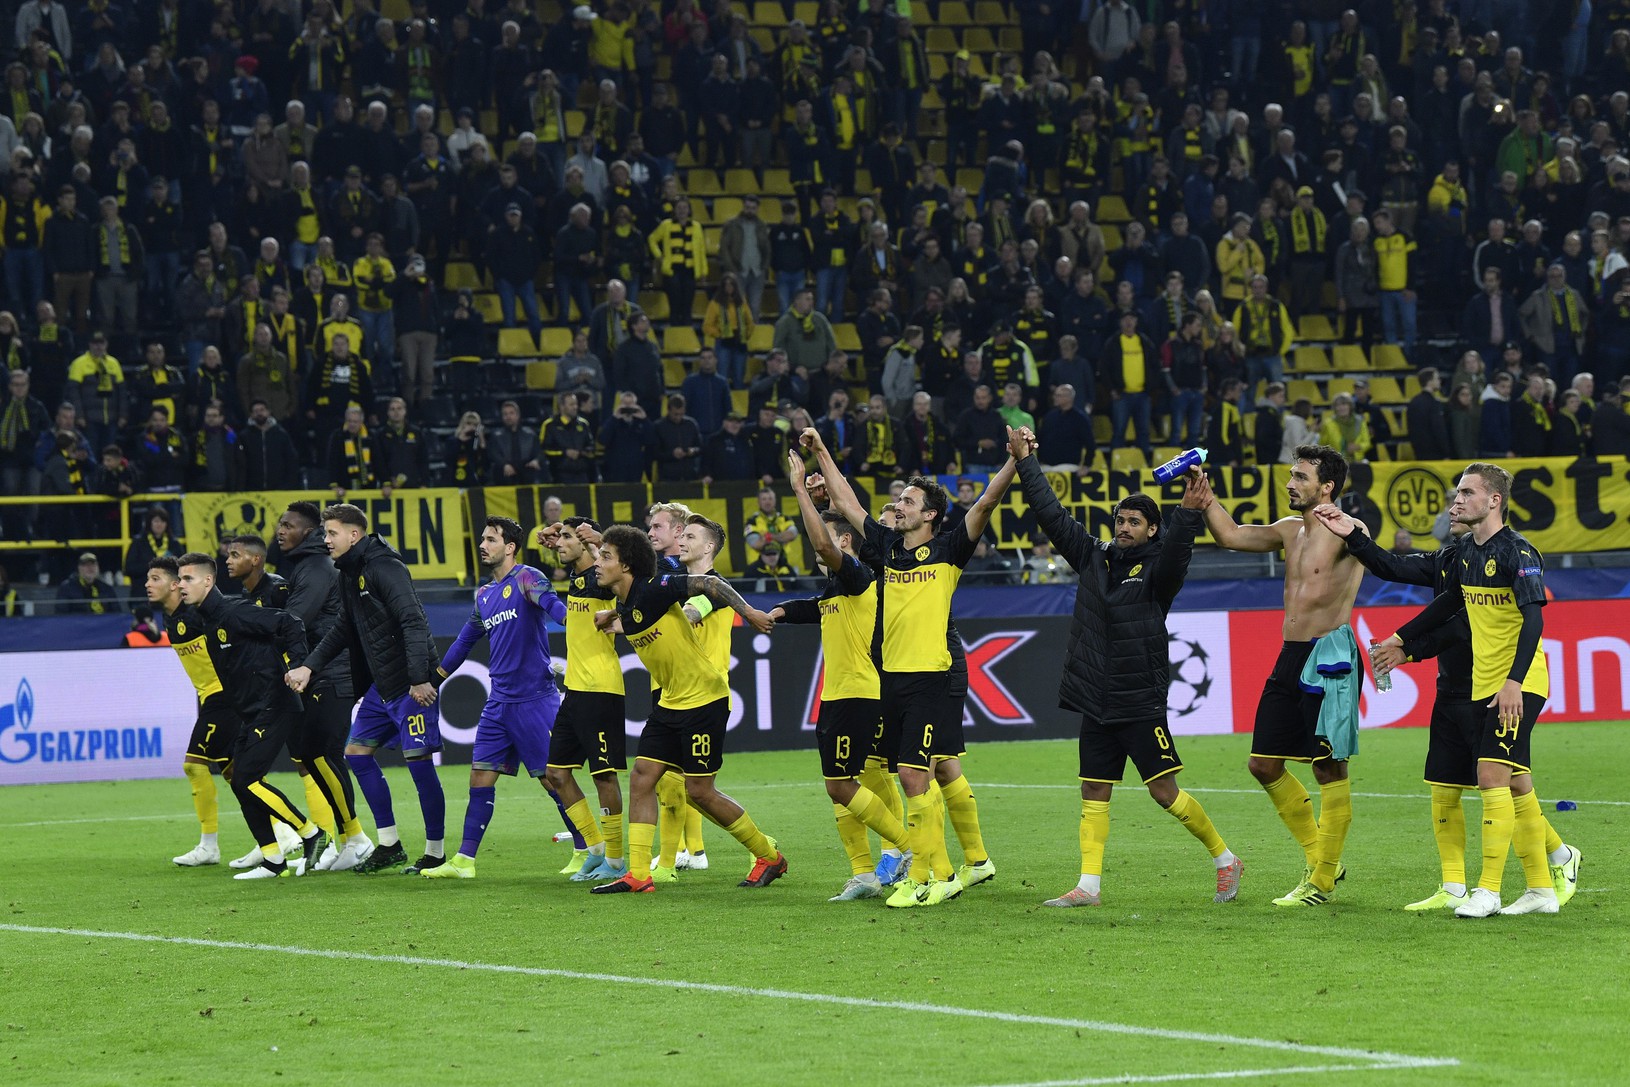 Ďakovačka hráčov Borussie Dortmund